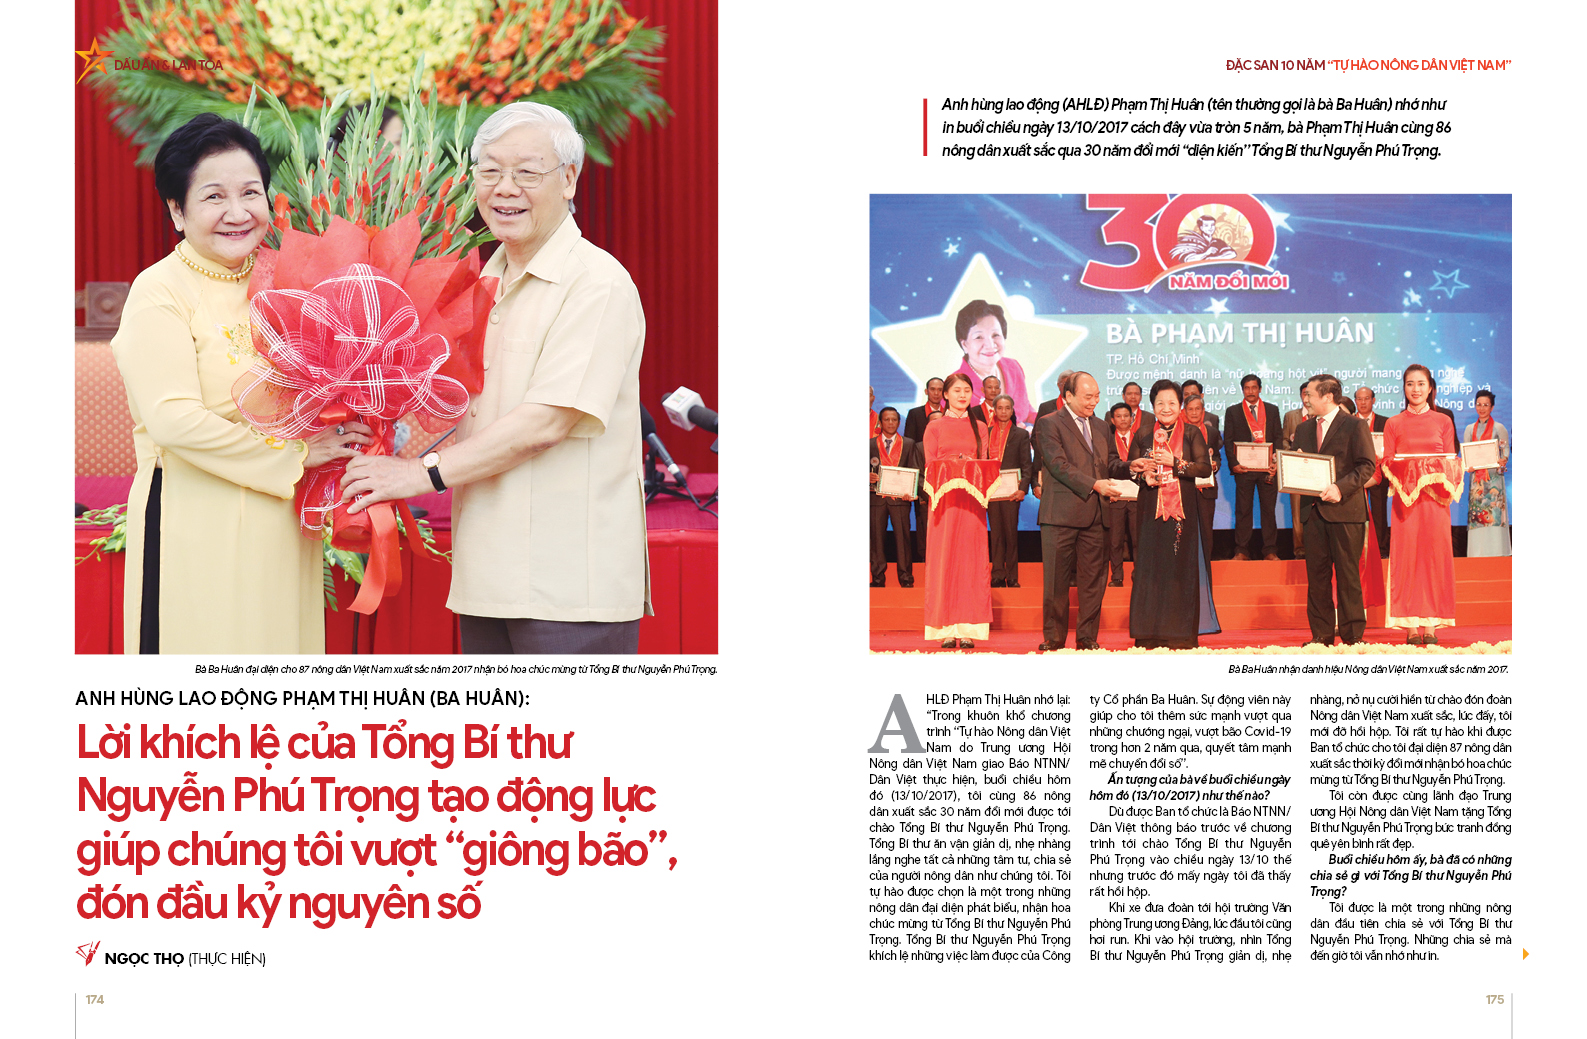 Chính thức ra mắt đặc san 10 năm Tự hào Nông dân Việt Nam - Ảnh 2.